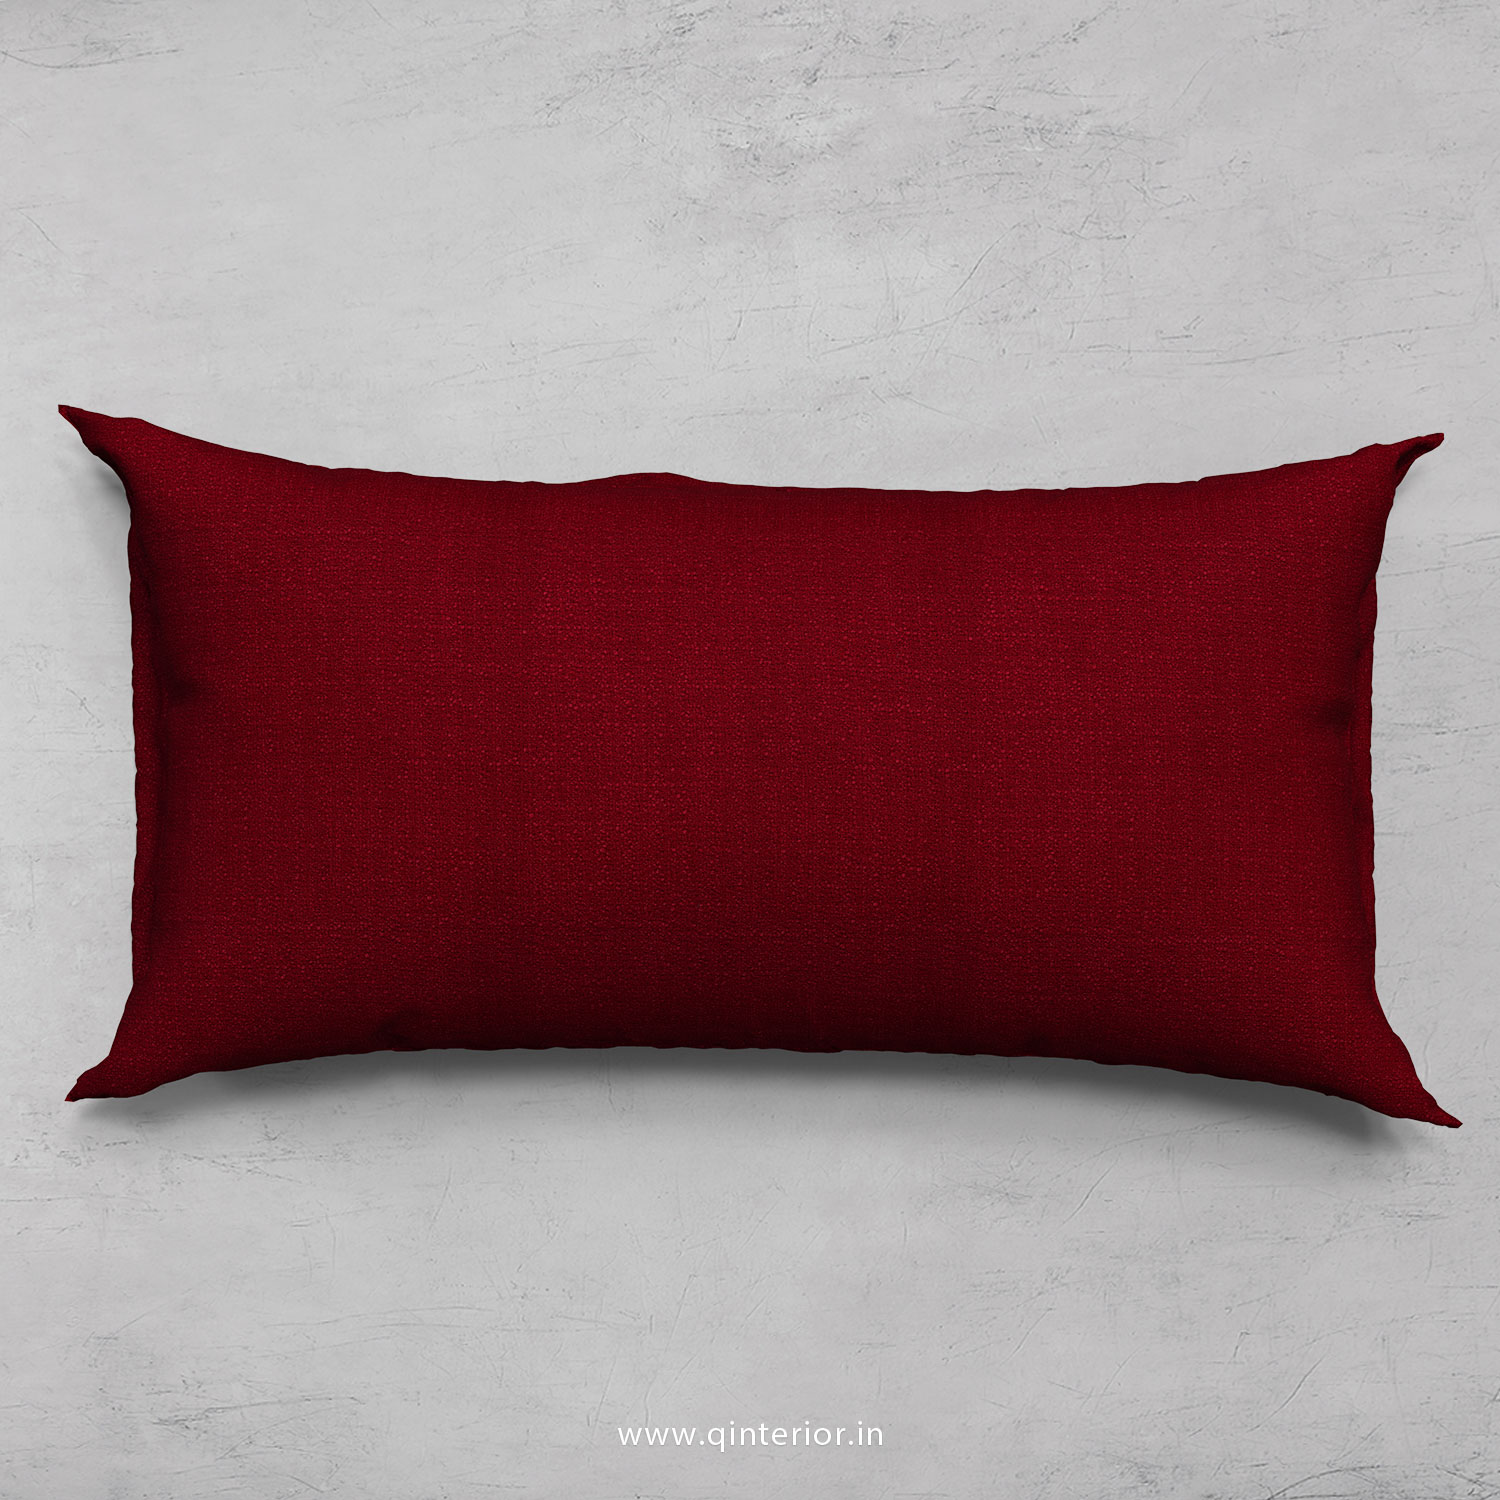 Cushion With Cushion Cover in Bargello - CUS002 BG08